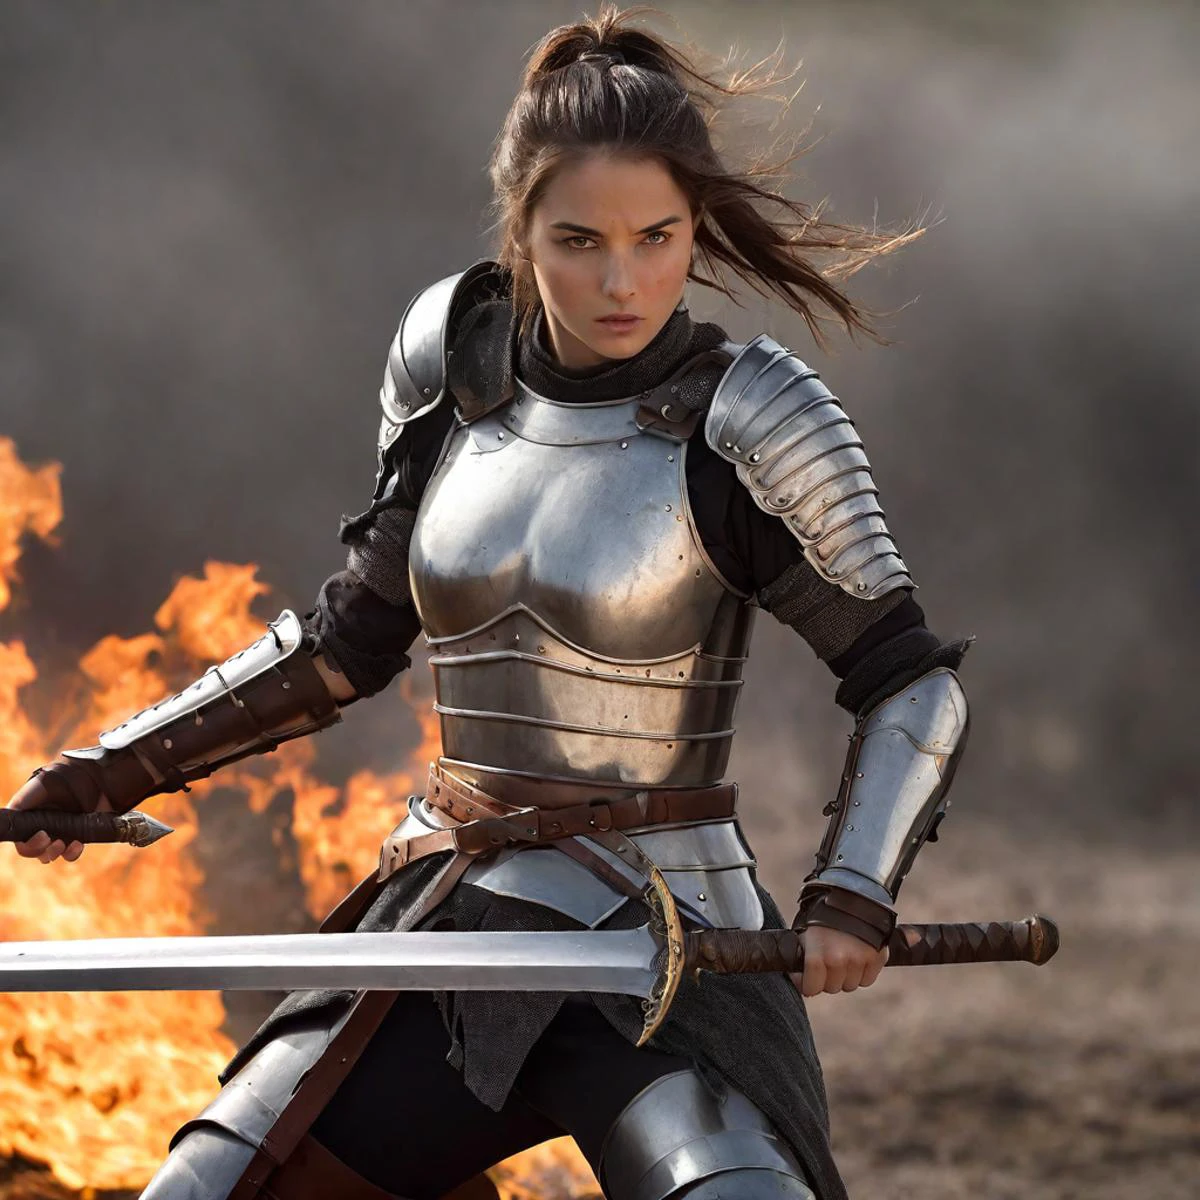 炎に焼けた戦場で、完全に武装した女性戦士が大剣を振り回している、驚くほど高画質の写真